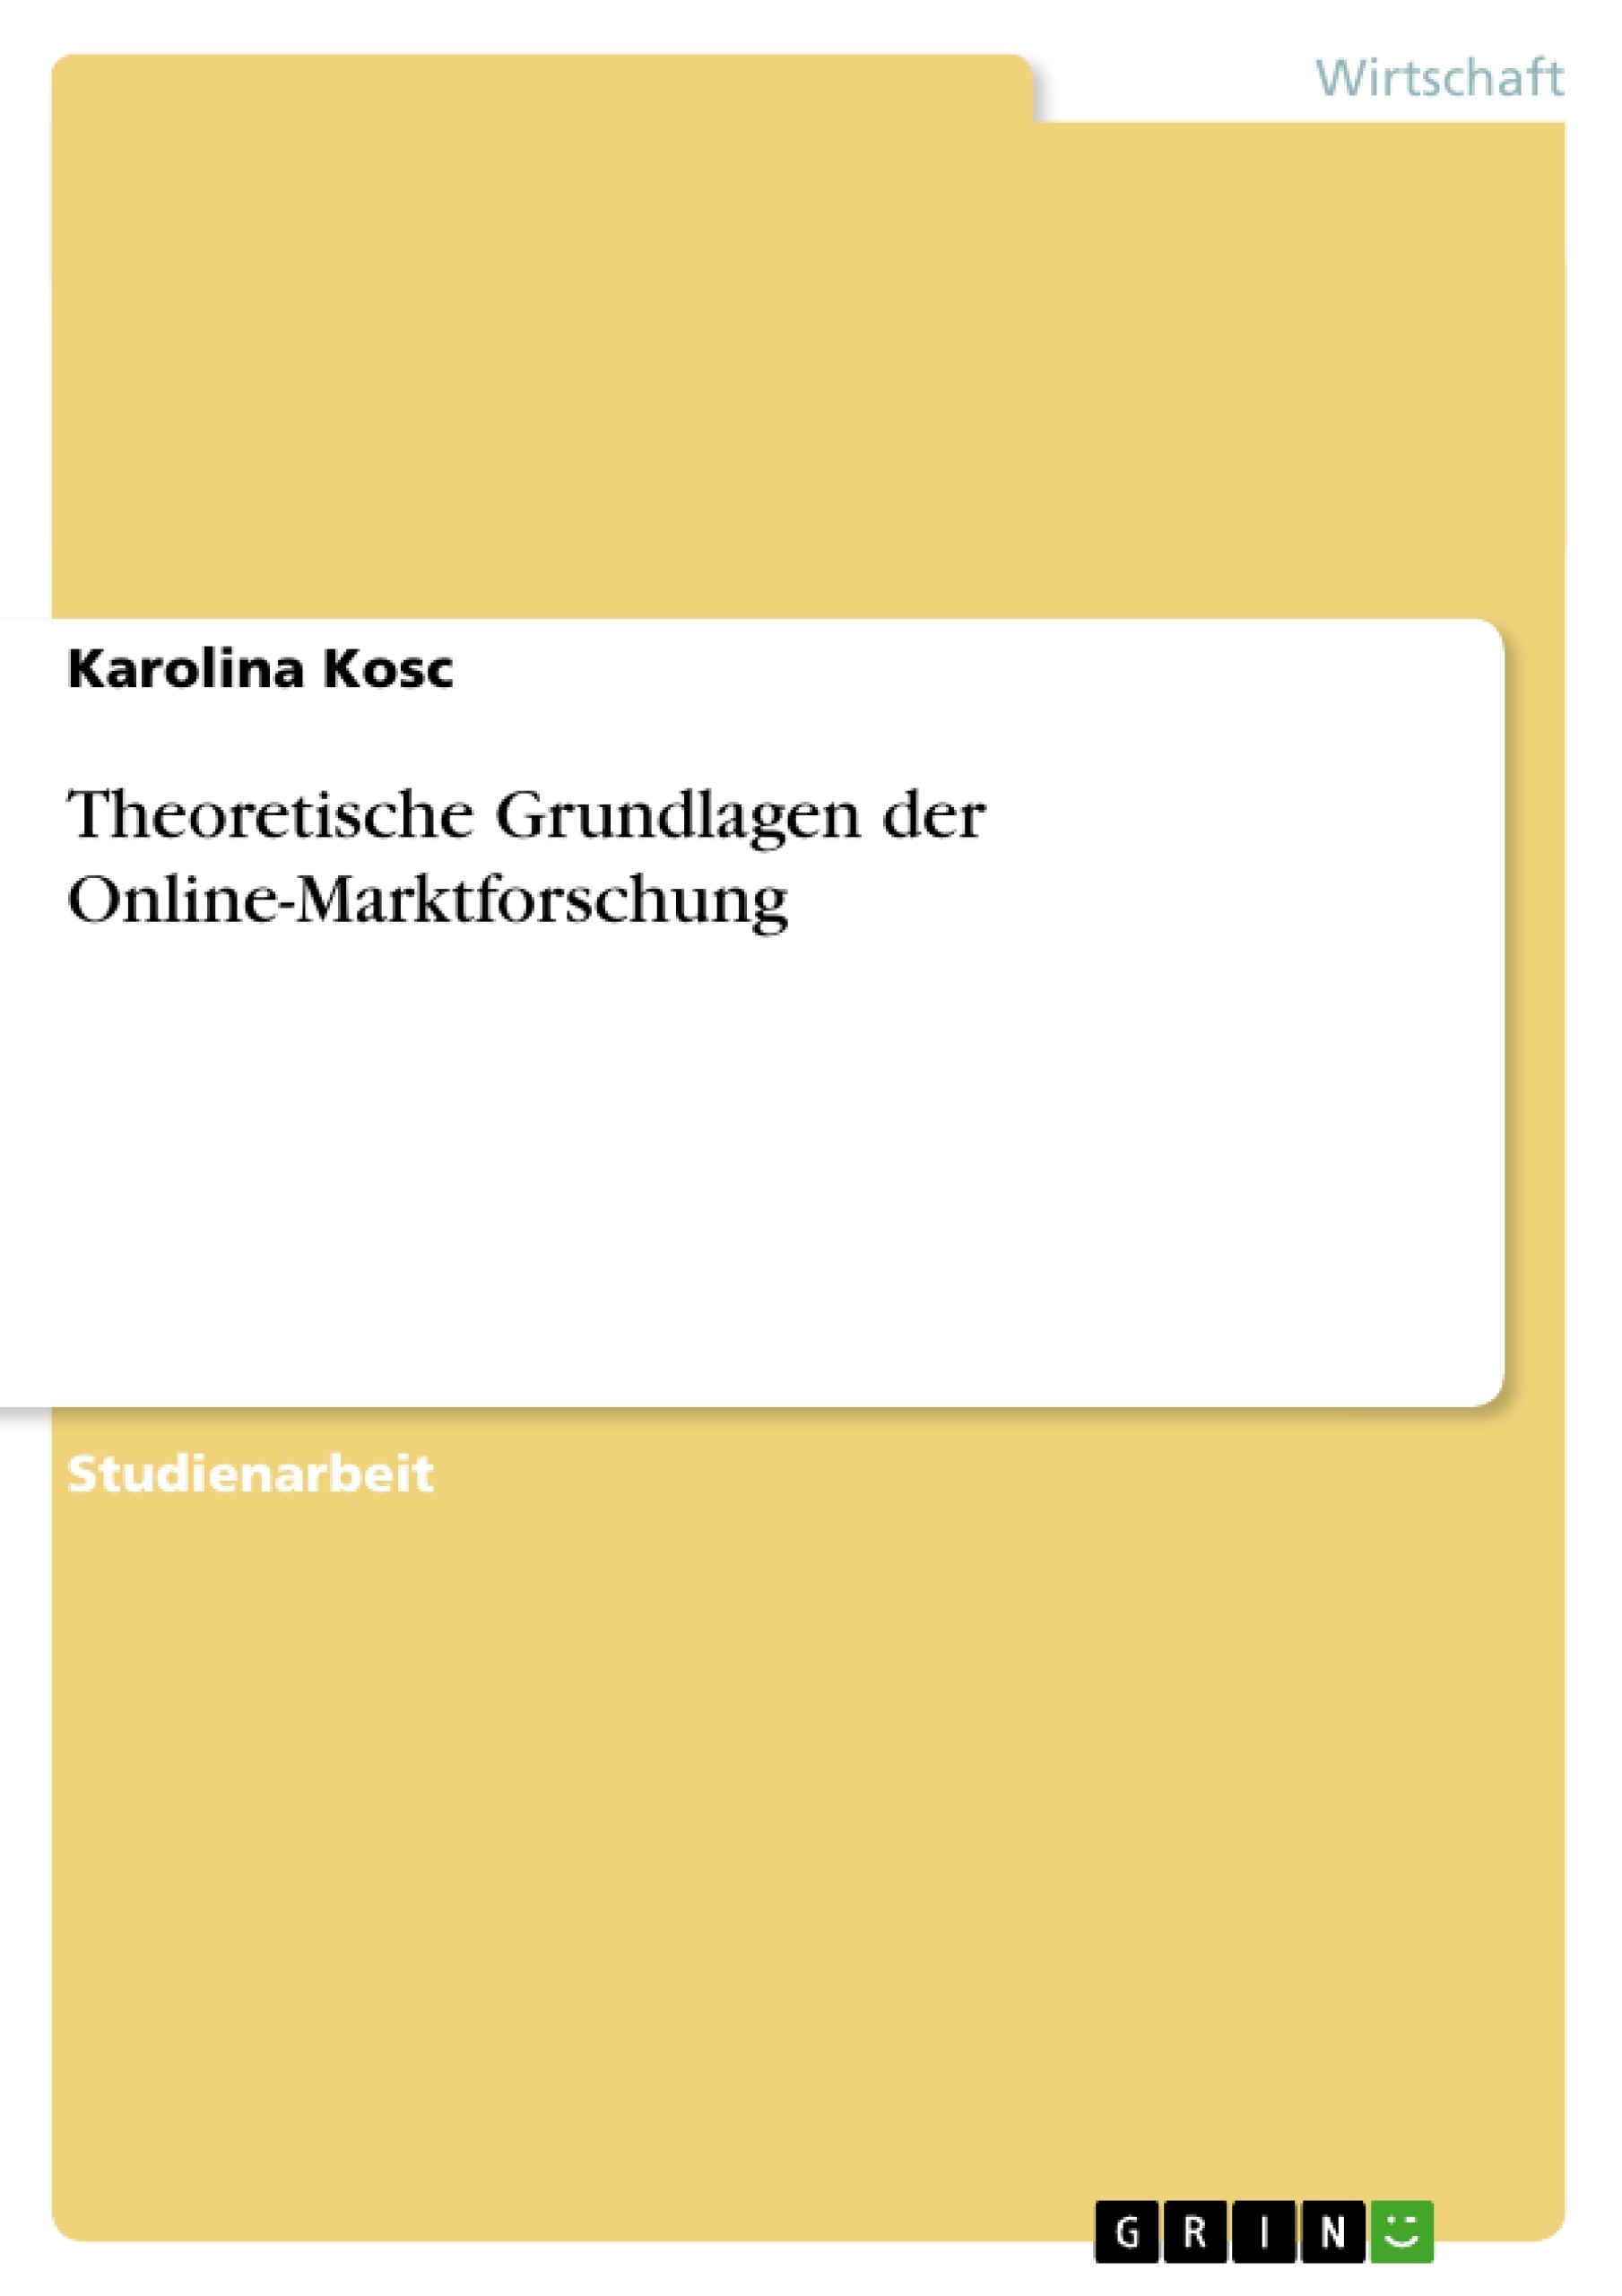 Título: Theoretische Grundlagen der Online-Marktforschung